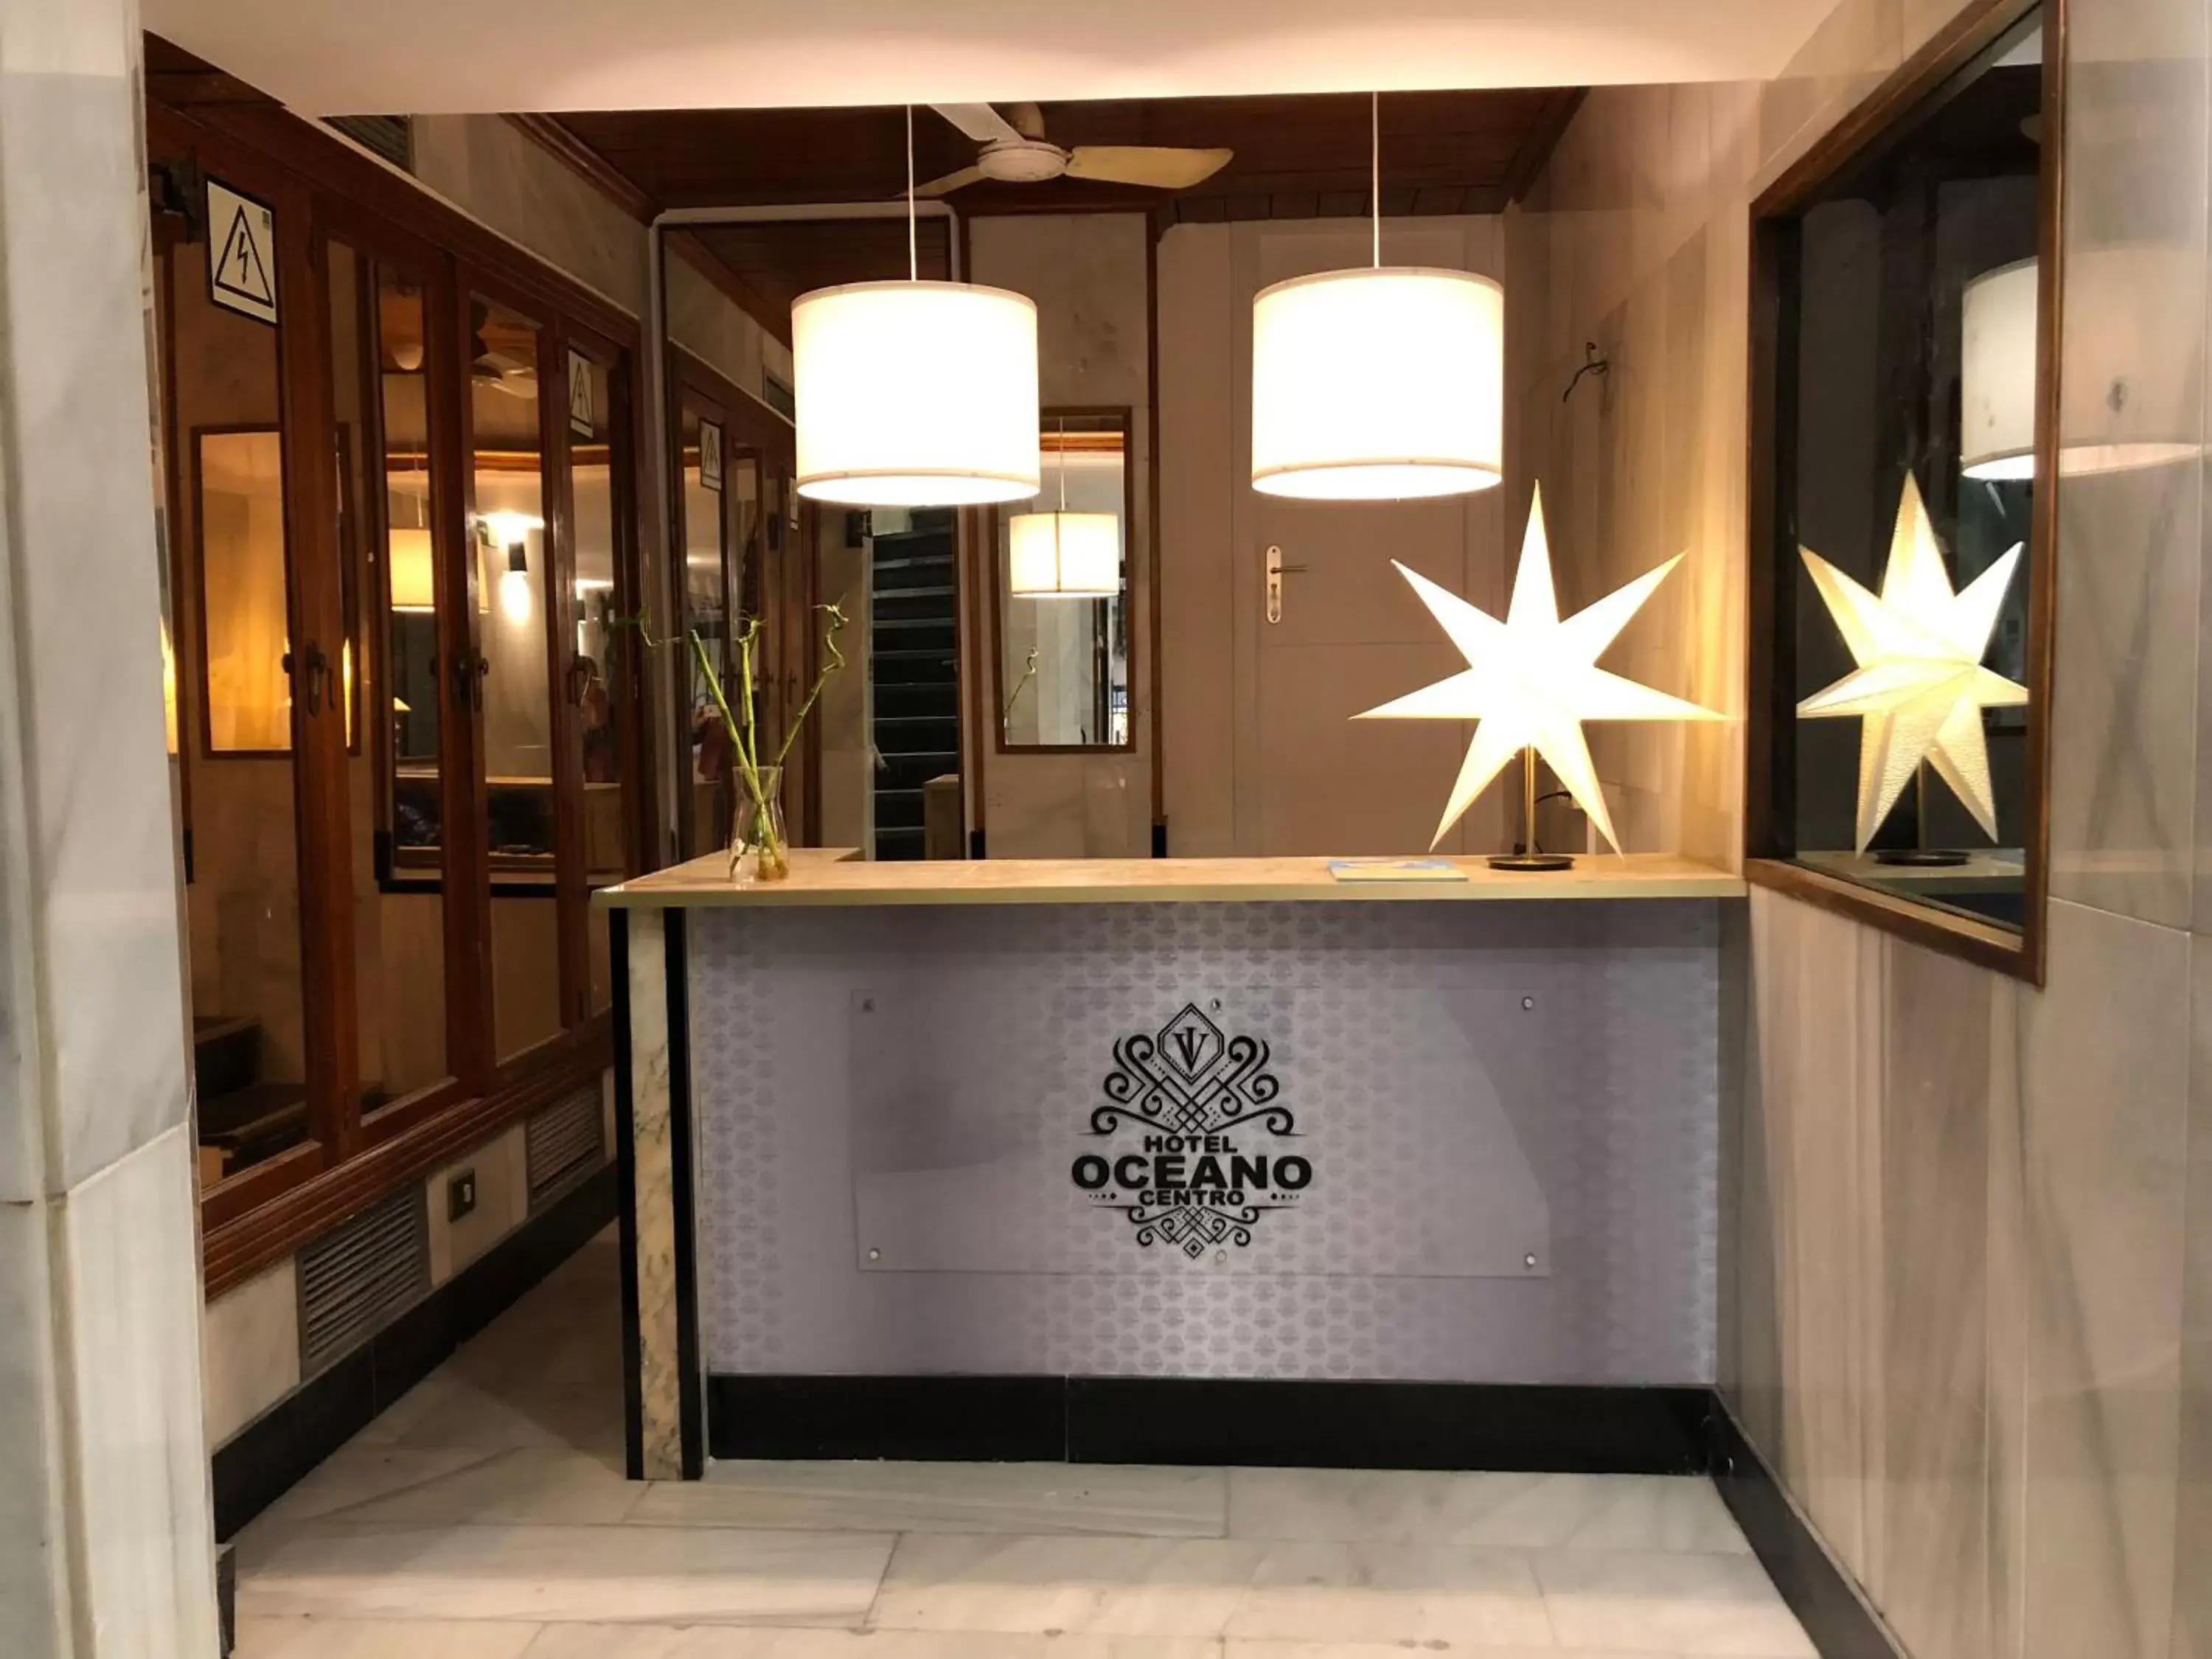 Lobby or reception, Lobby/Reception in Hotel Océano Centro